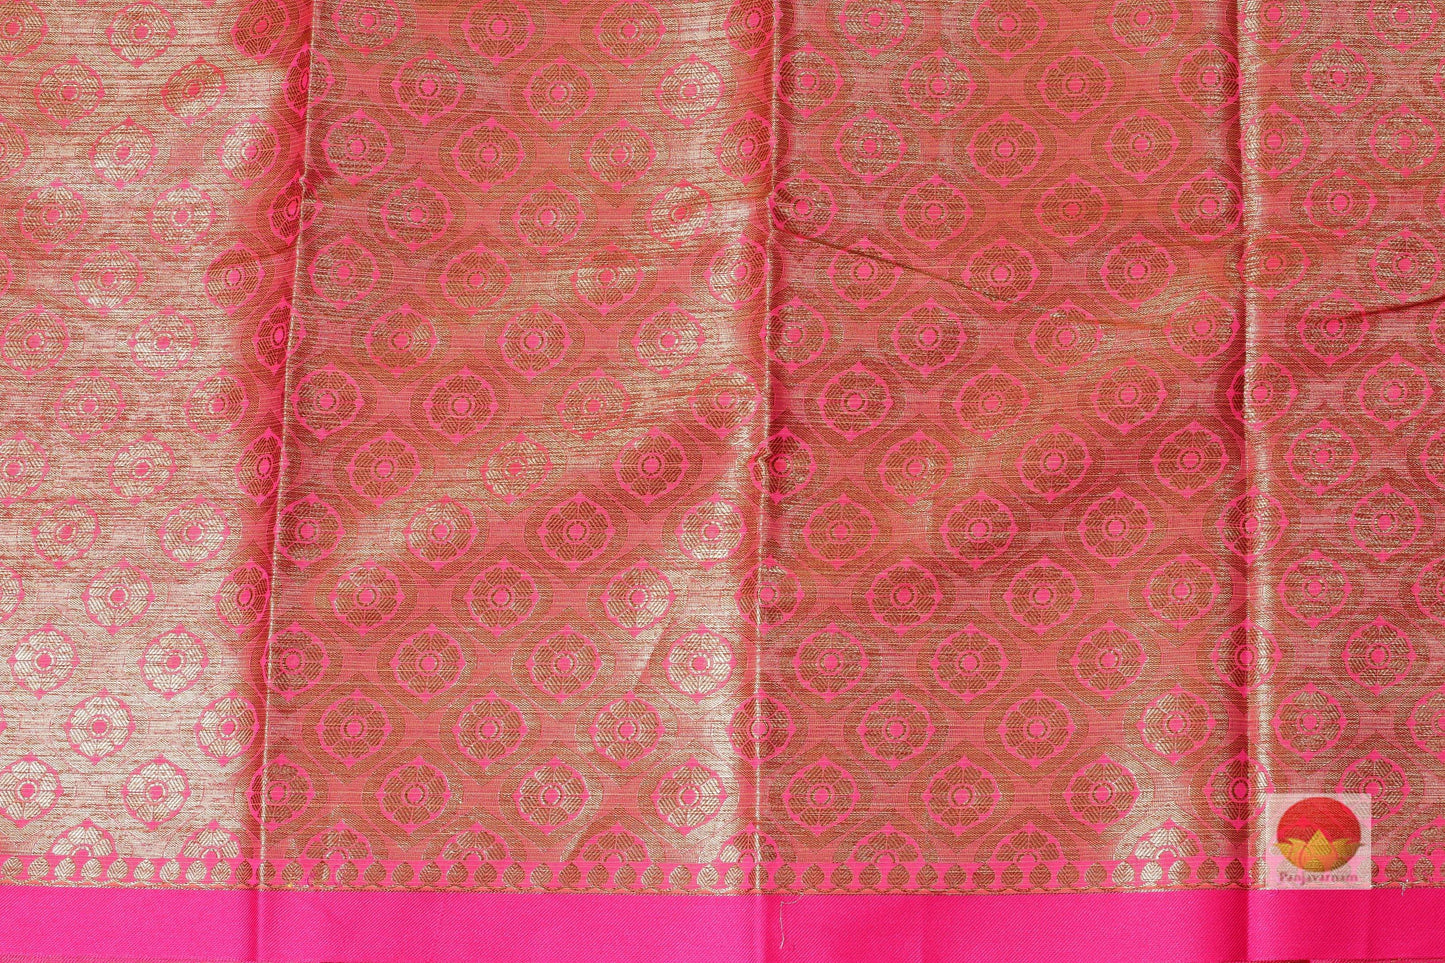 Lite Weight Banarasi Silk Cotton Saree - PSC 213 - Silk Cotton - Panjavarnam